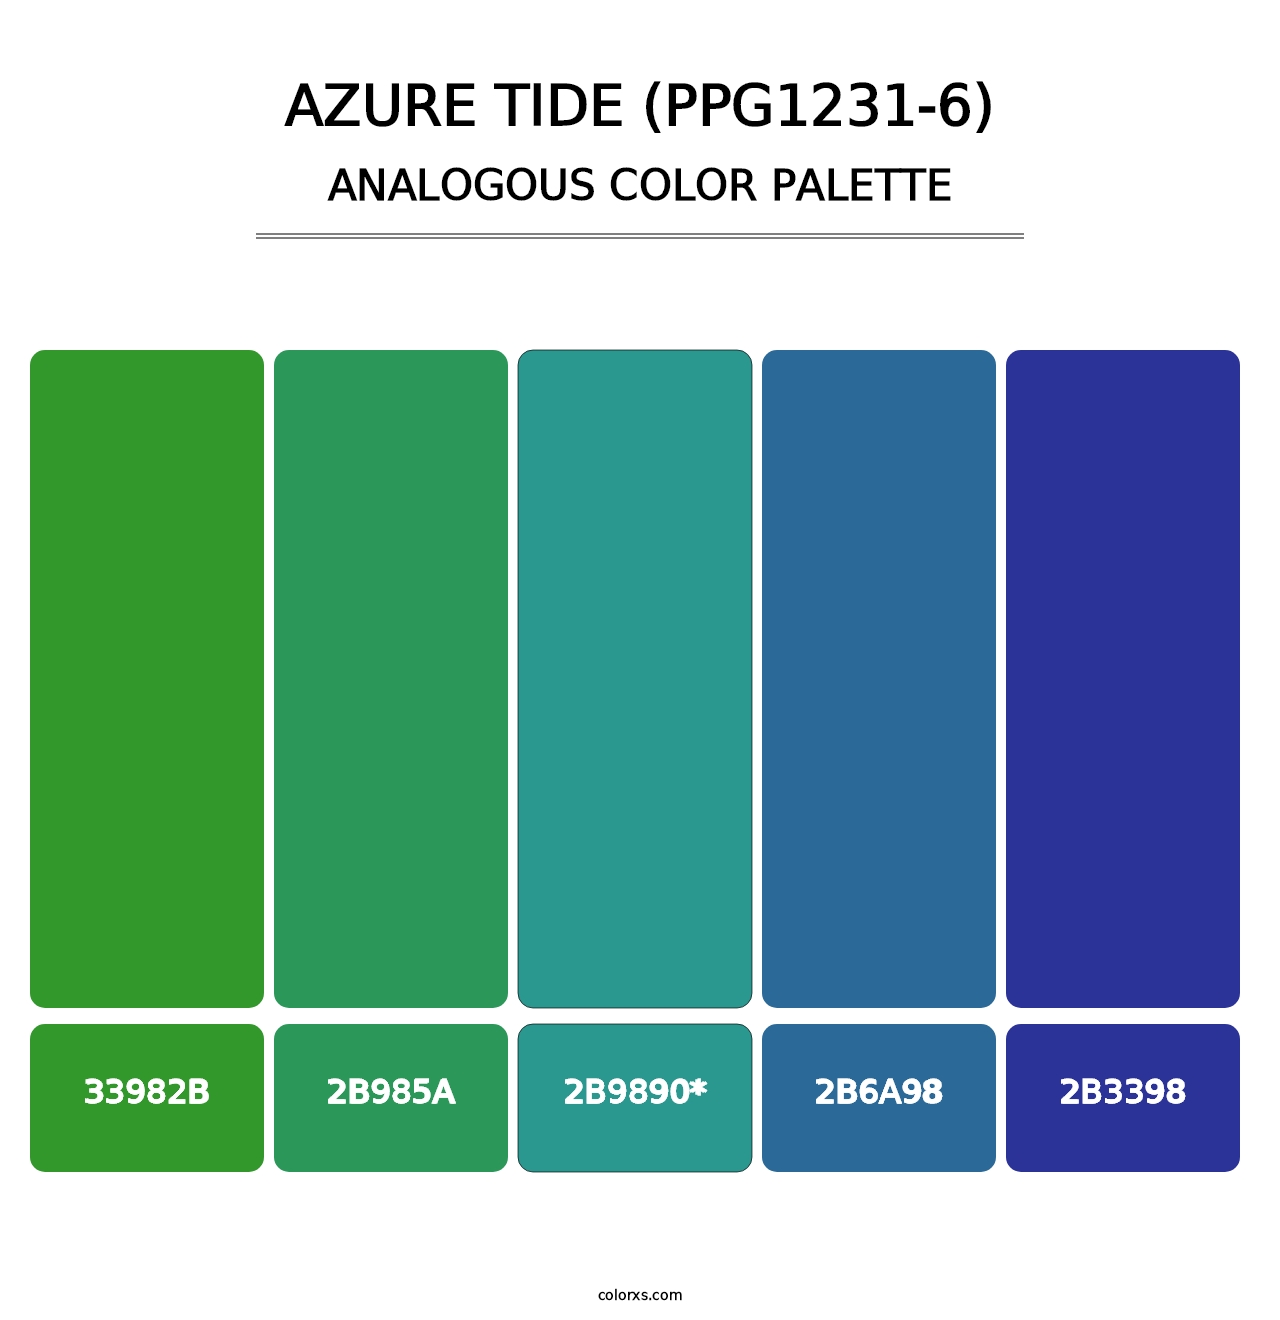 Azure Tide (PPG1231-6) - Analogous Color Palette